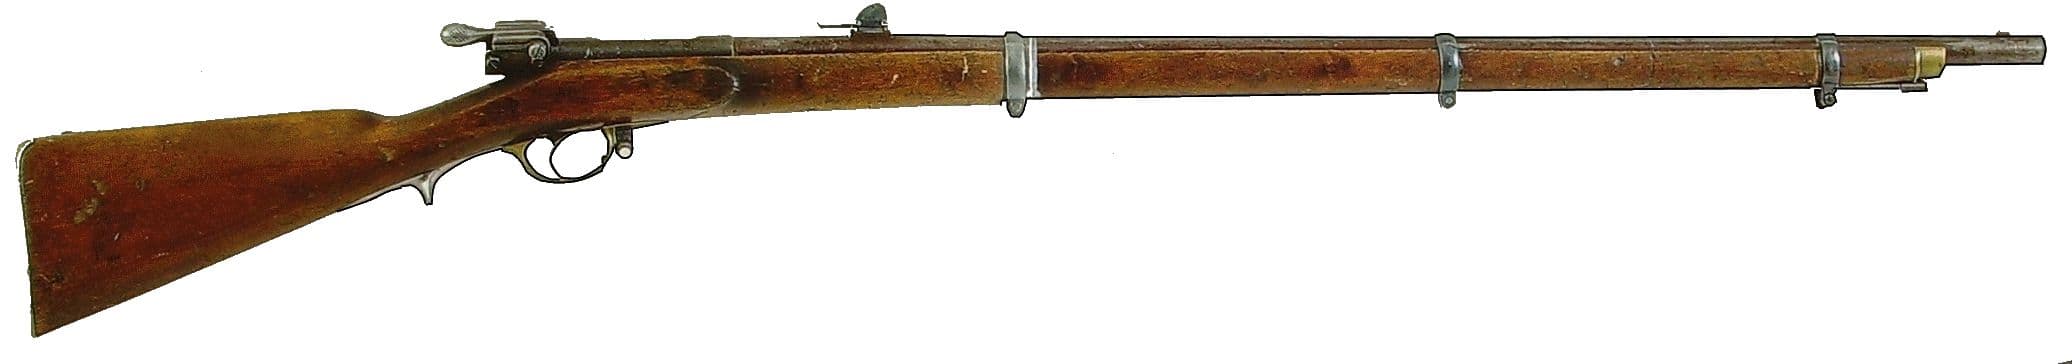 Иголчатая винтовка системы Карле образца 1867 года, оружие Ижевска.